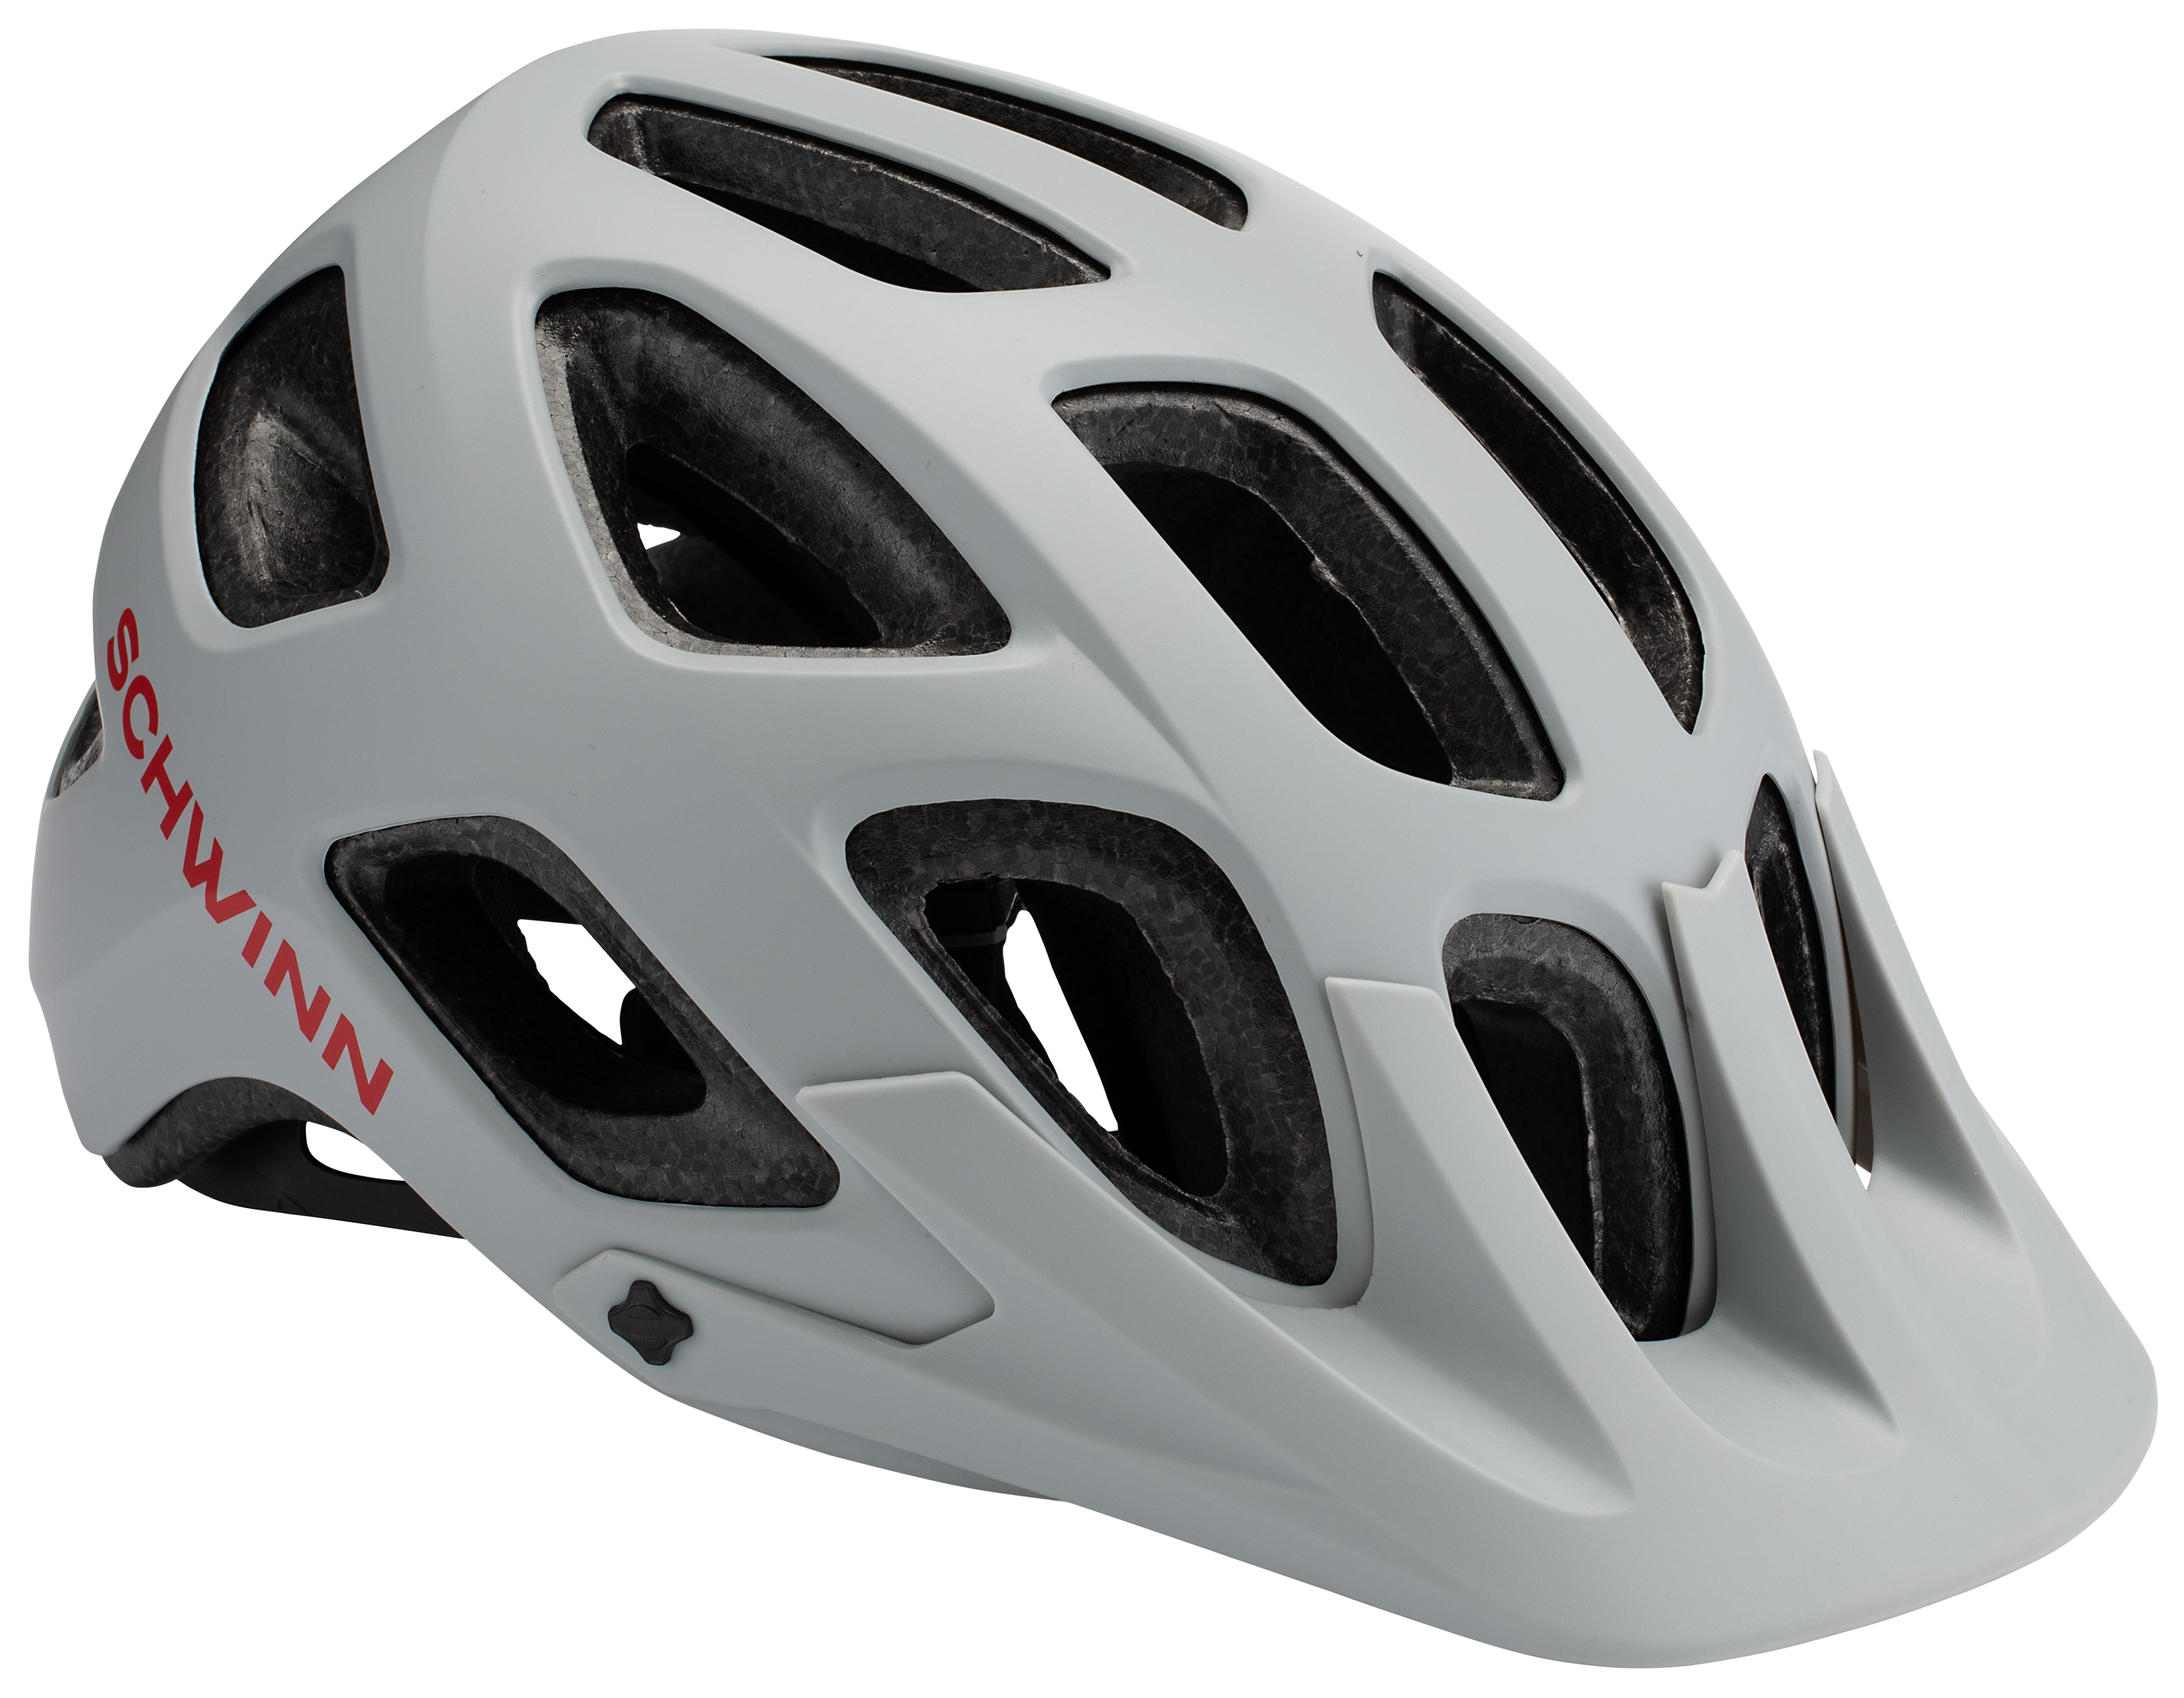 Schwinn Excursion Bike Helmet - Grey